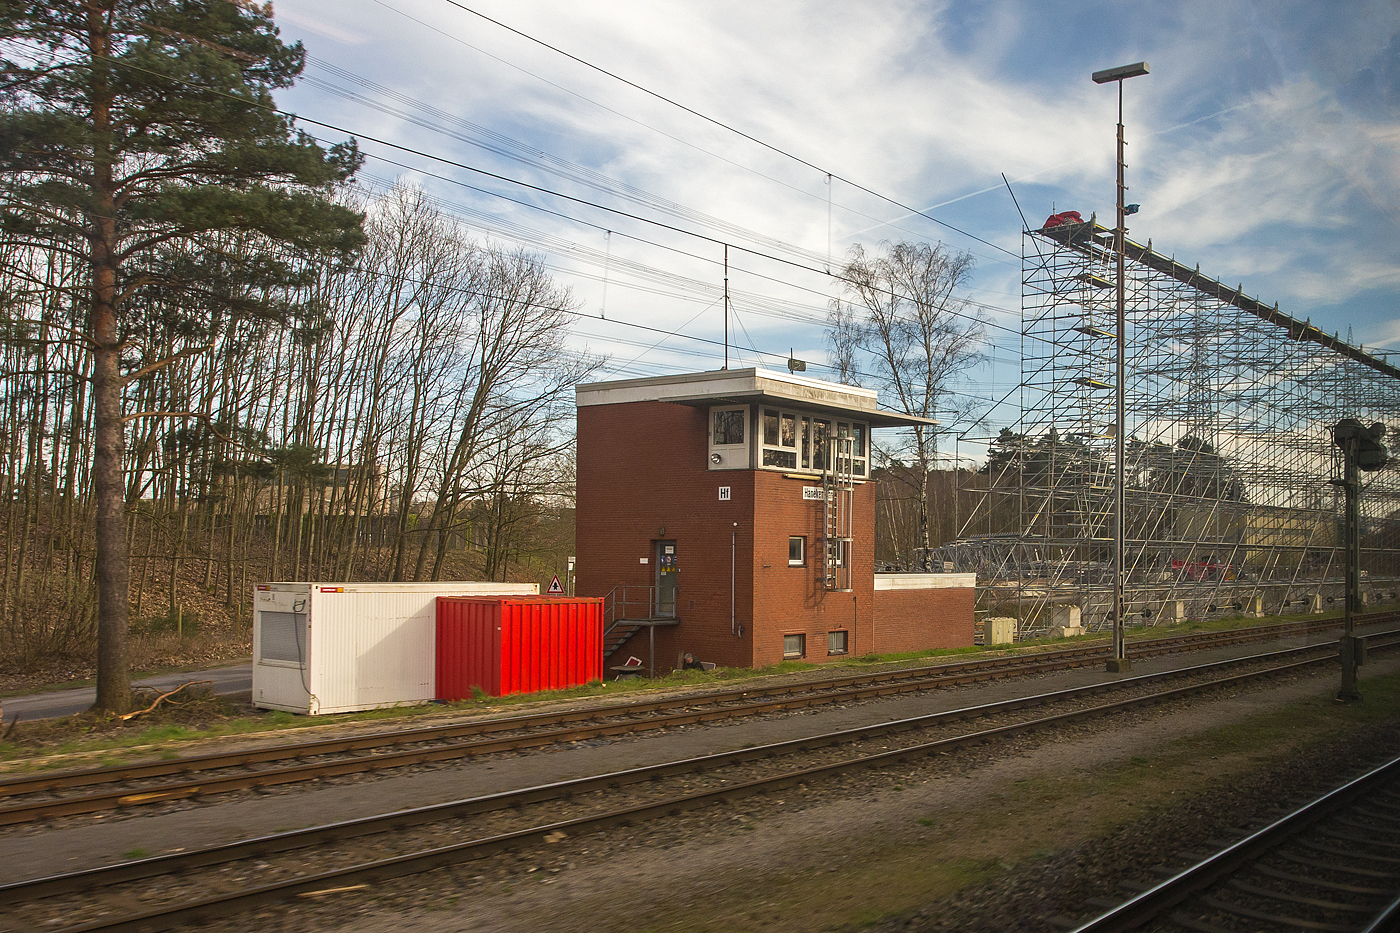 Ein Blick aus dem Zug auf das elektromechanische Stellwerk Hanekenfhr Fahrdienstleiter „Hf“ am 14 Mrz 2024. Das aktive Stellwerk ist in der Bauform VES 1912 (E43) mit Glhlampenberwachung. 

Das Stellwerk Hanekenfhr befindet sich sdlich von Lingen an der Emslandstrecke KBS 395 Rheine - Emden – (Norddeich Mole) und liegt zwischen den ehemaligen Kernkraftwerken Lingen und Emsland.